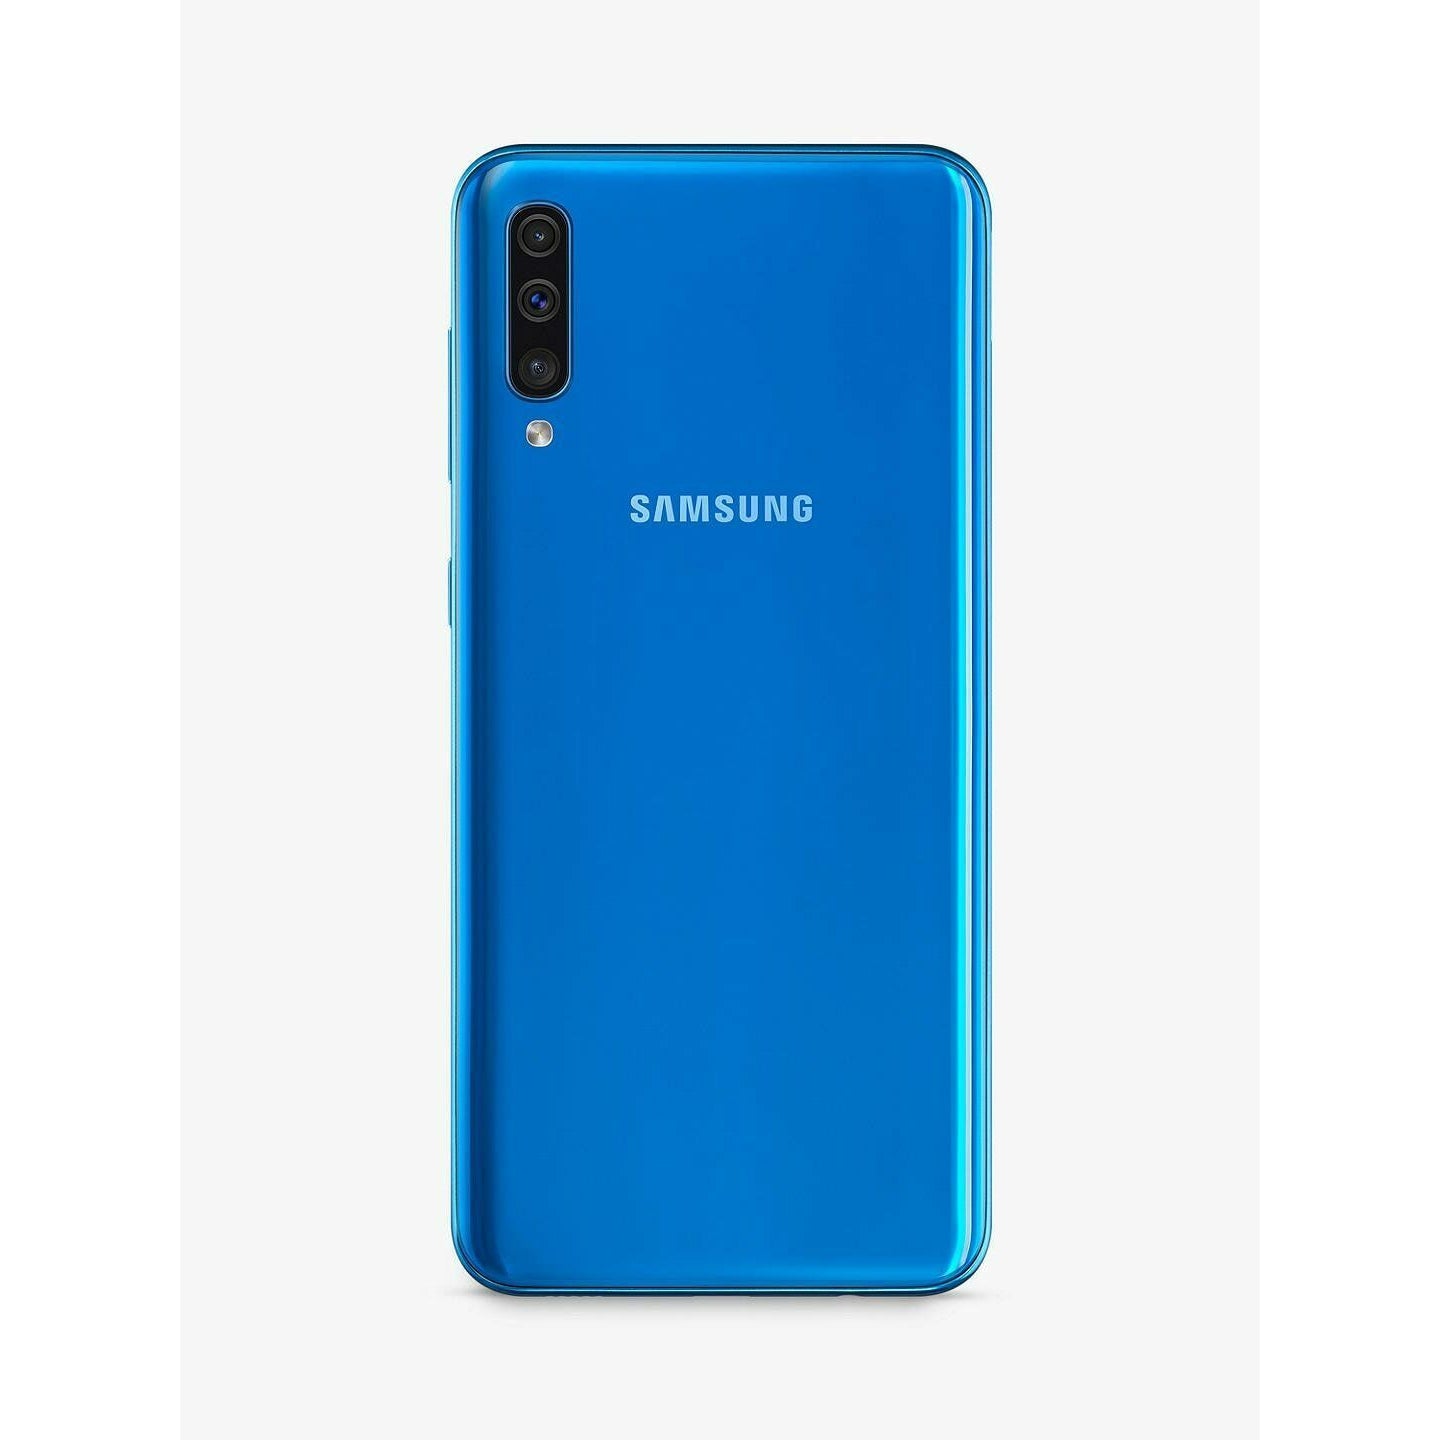 Samsung Galaxy A50 Smartphone, 4GB RAM, 6.4", 4G LTE, SIM Free, 128GB, Blue